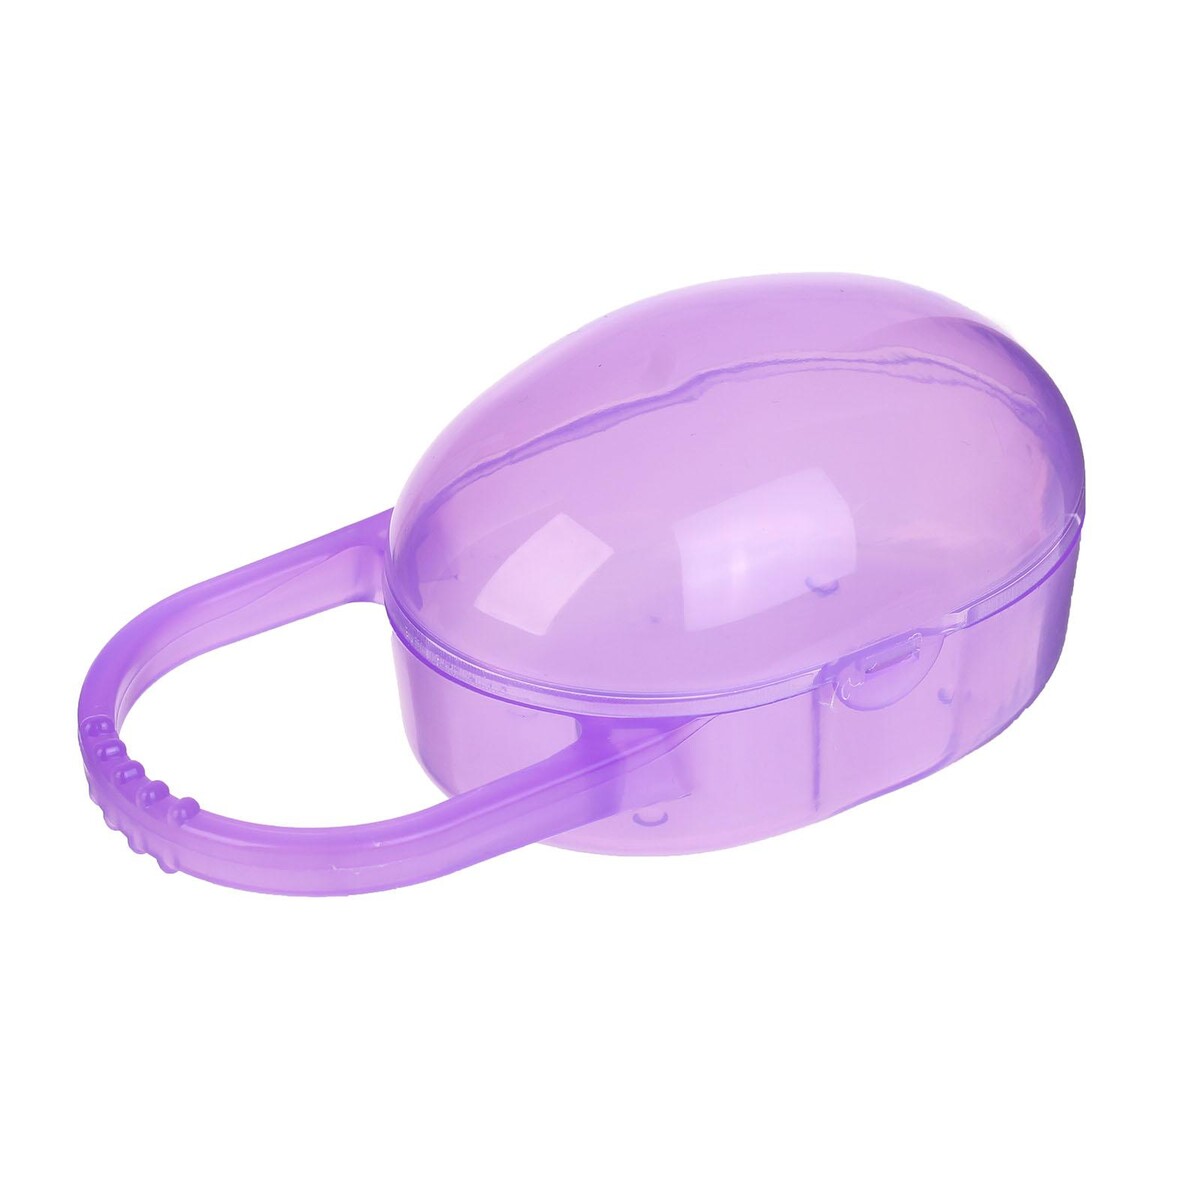 Контейнер для хранения и стерилизации детских сосок и пустышек, цвет фиолетовый контейнер двухуровневый 515 мл sistema to go фиолетовый